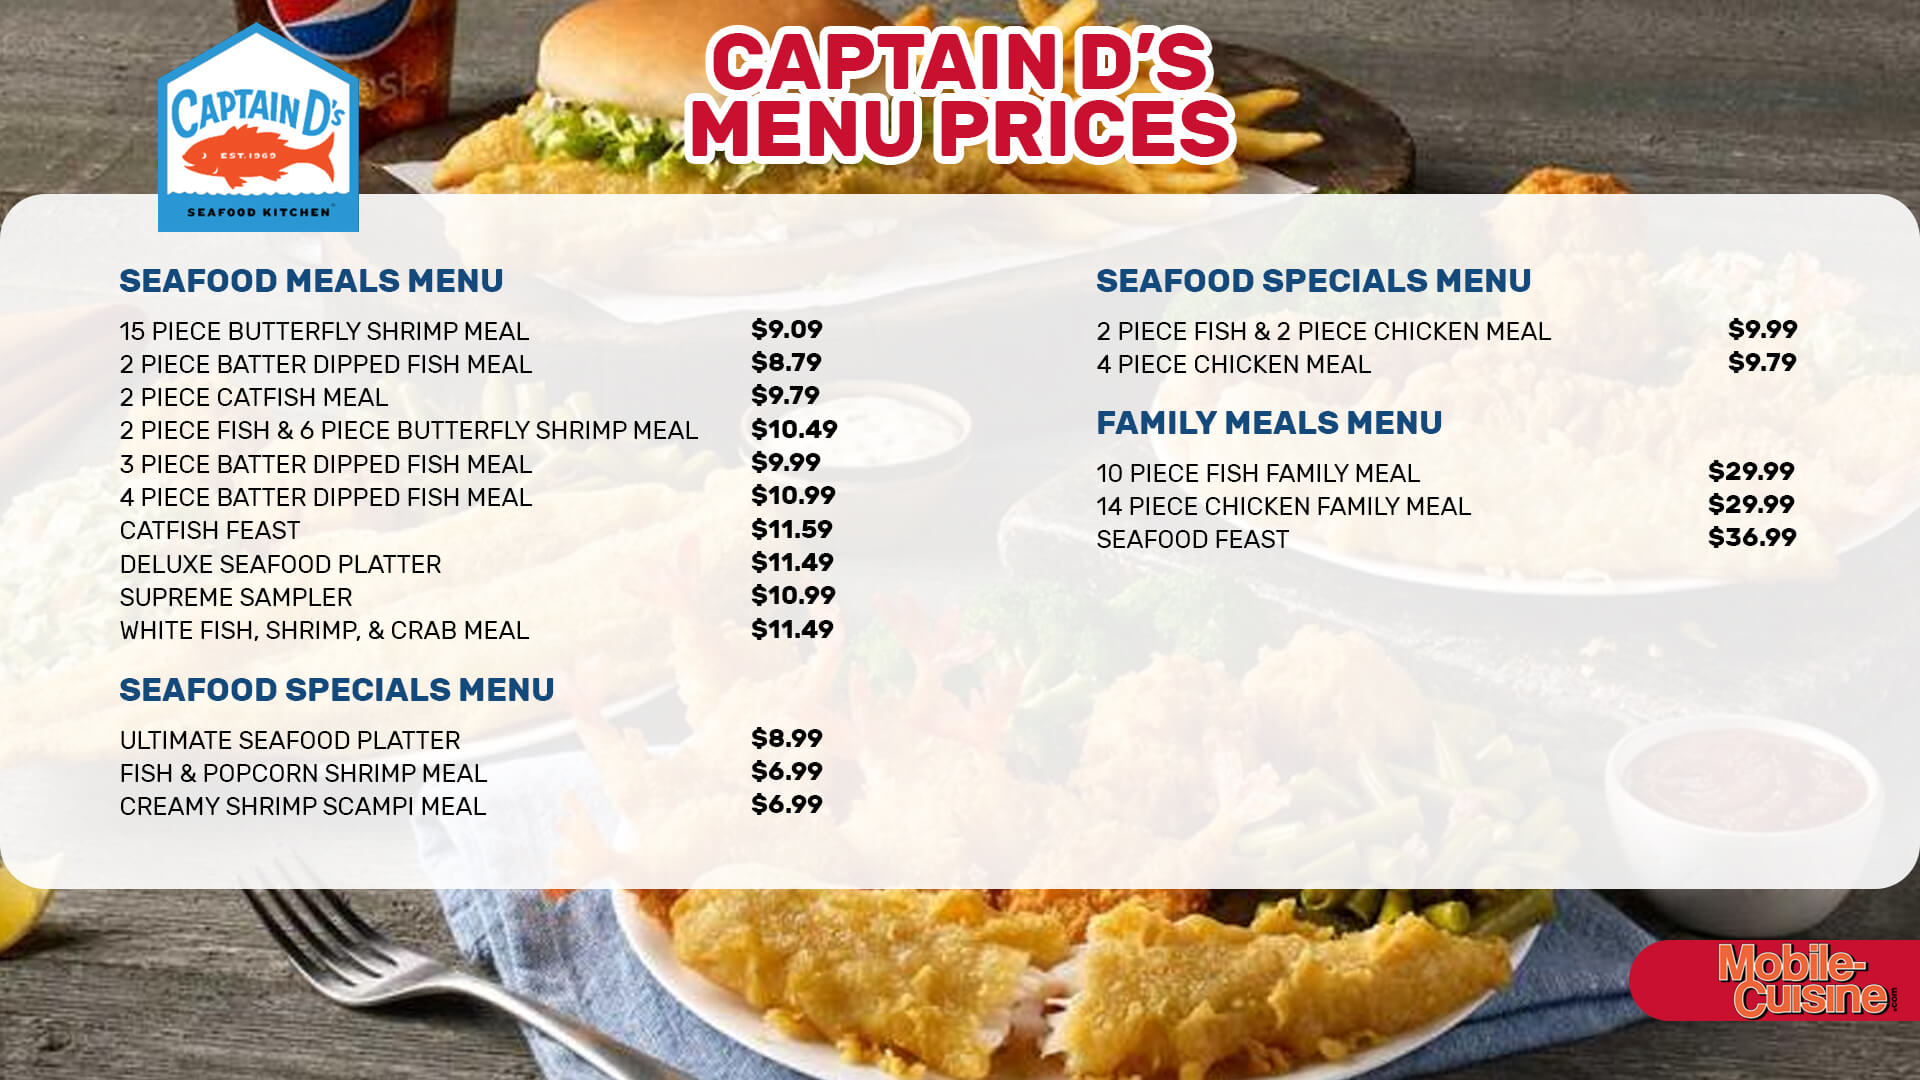 Captain D's menu prices